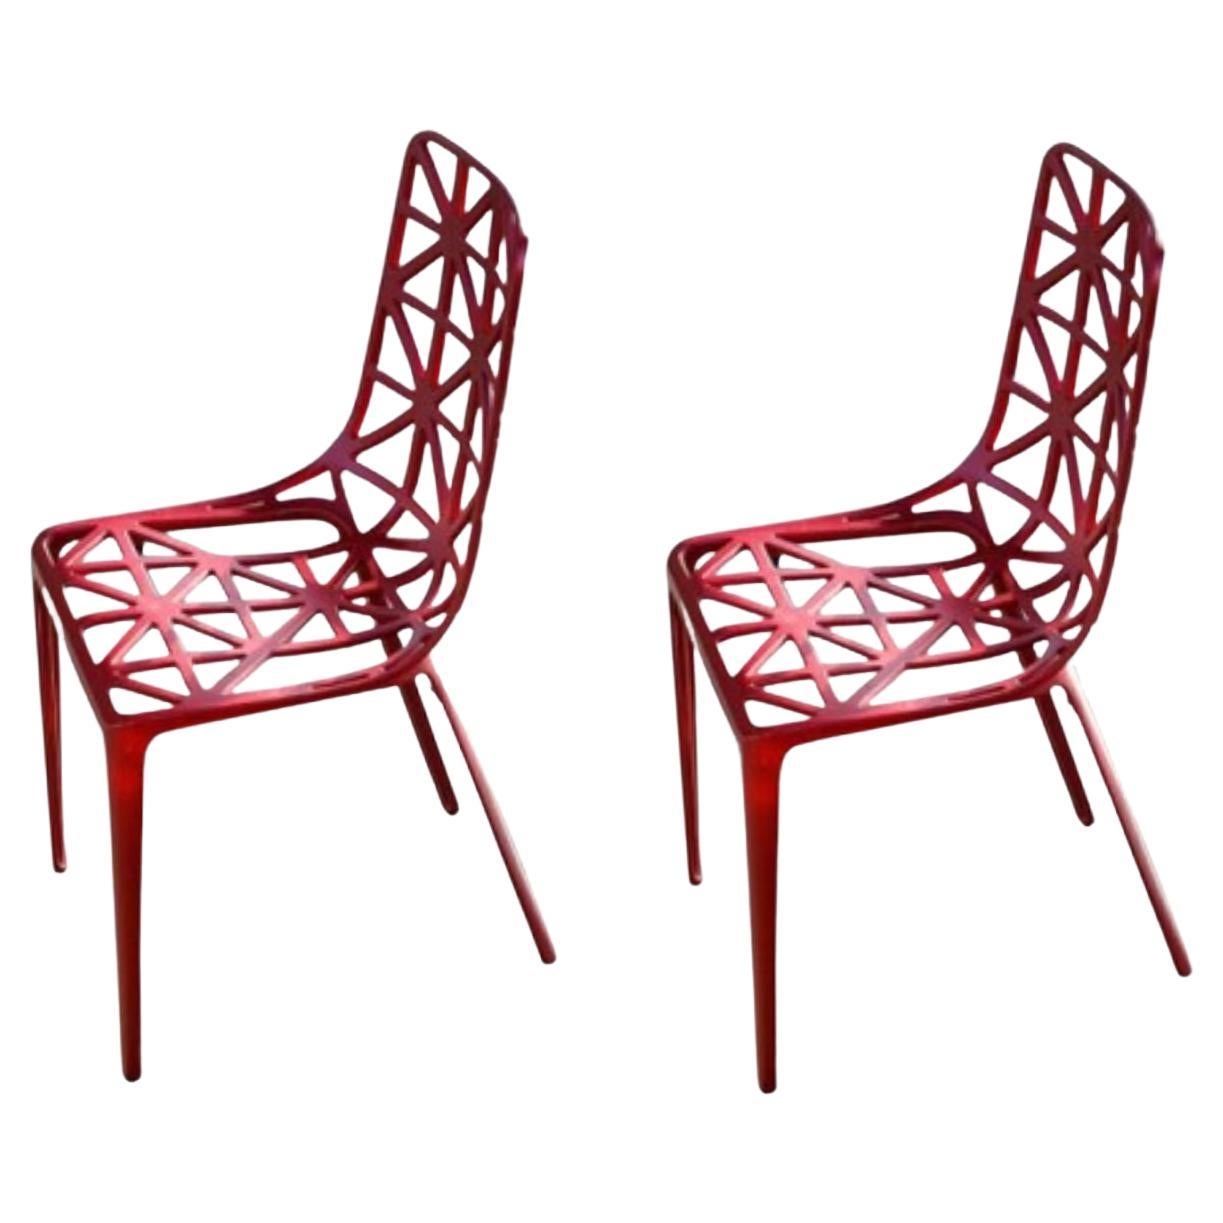 Satz von 2 roten, neuen Eiffelturm-Stühlen von Alain Moatti